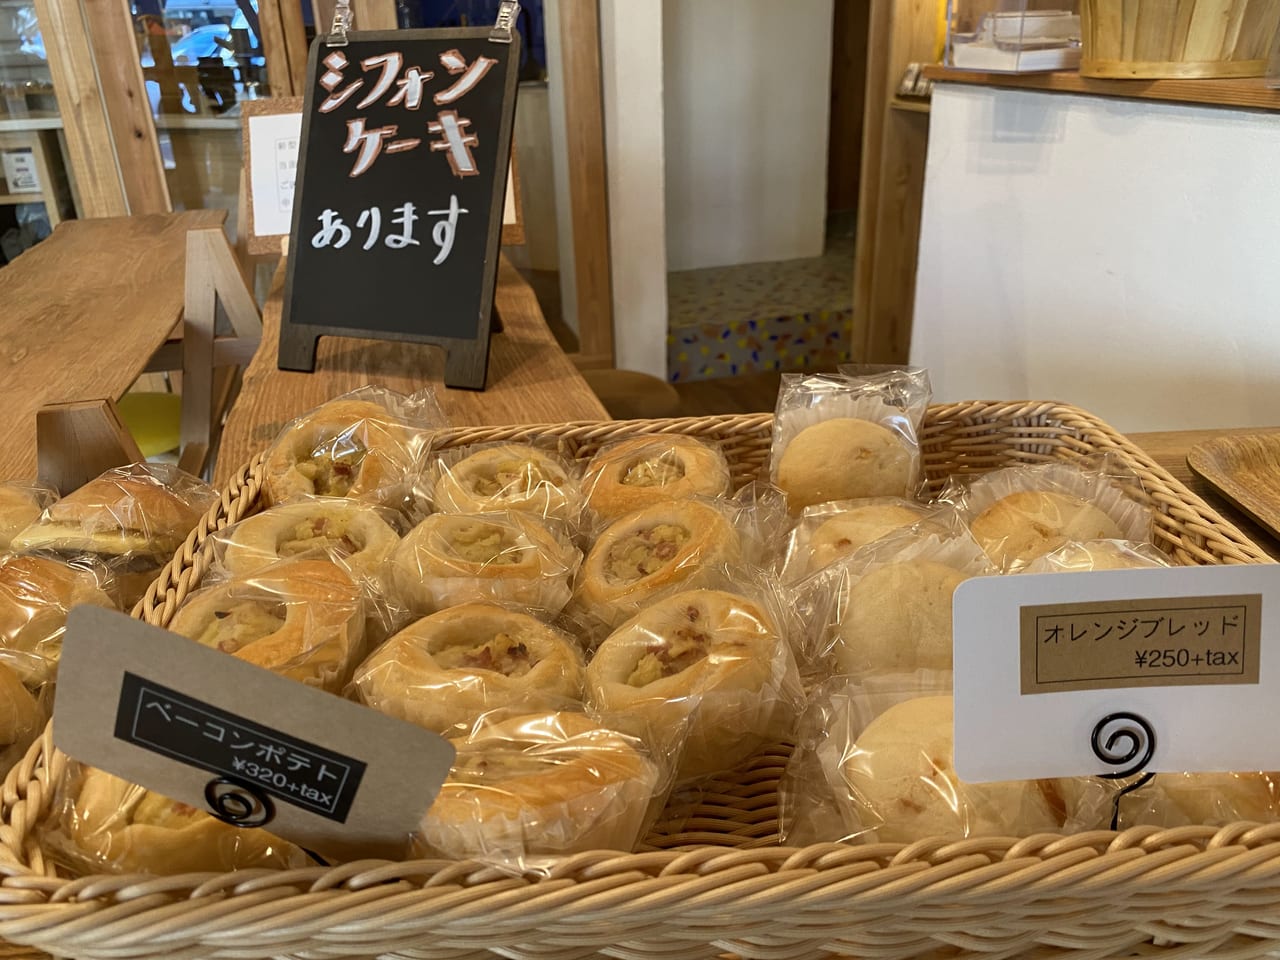 足立区 週２回レンタルスペースで販売される生米パンはふわっふわ 店内にはたくさんの米粉パンが並んでいました 号外net 足立区